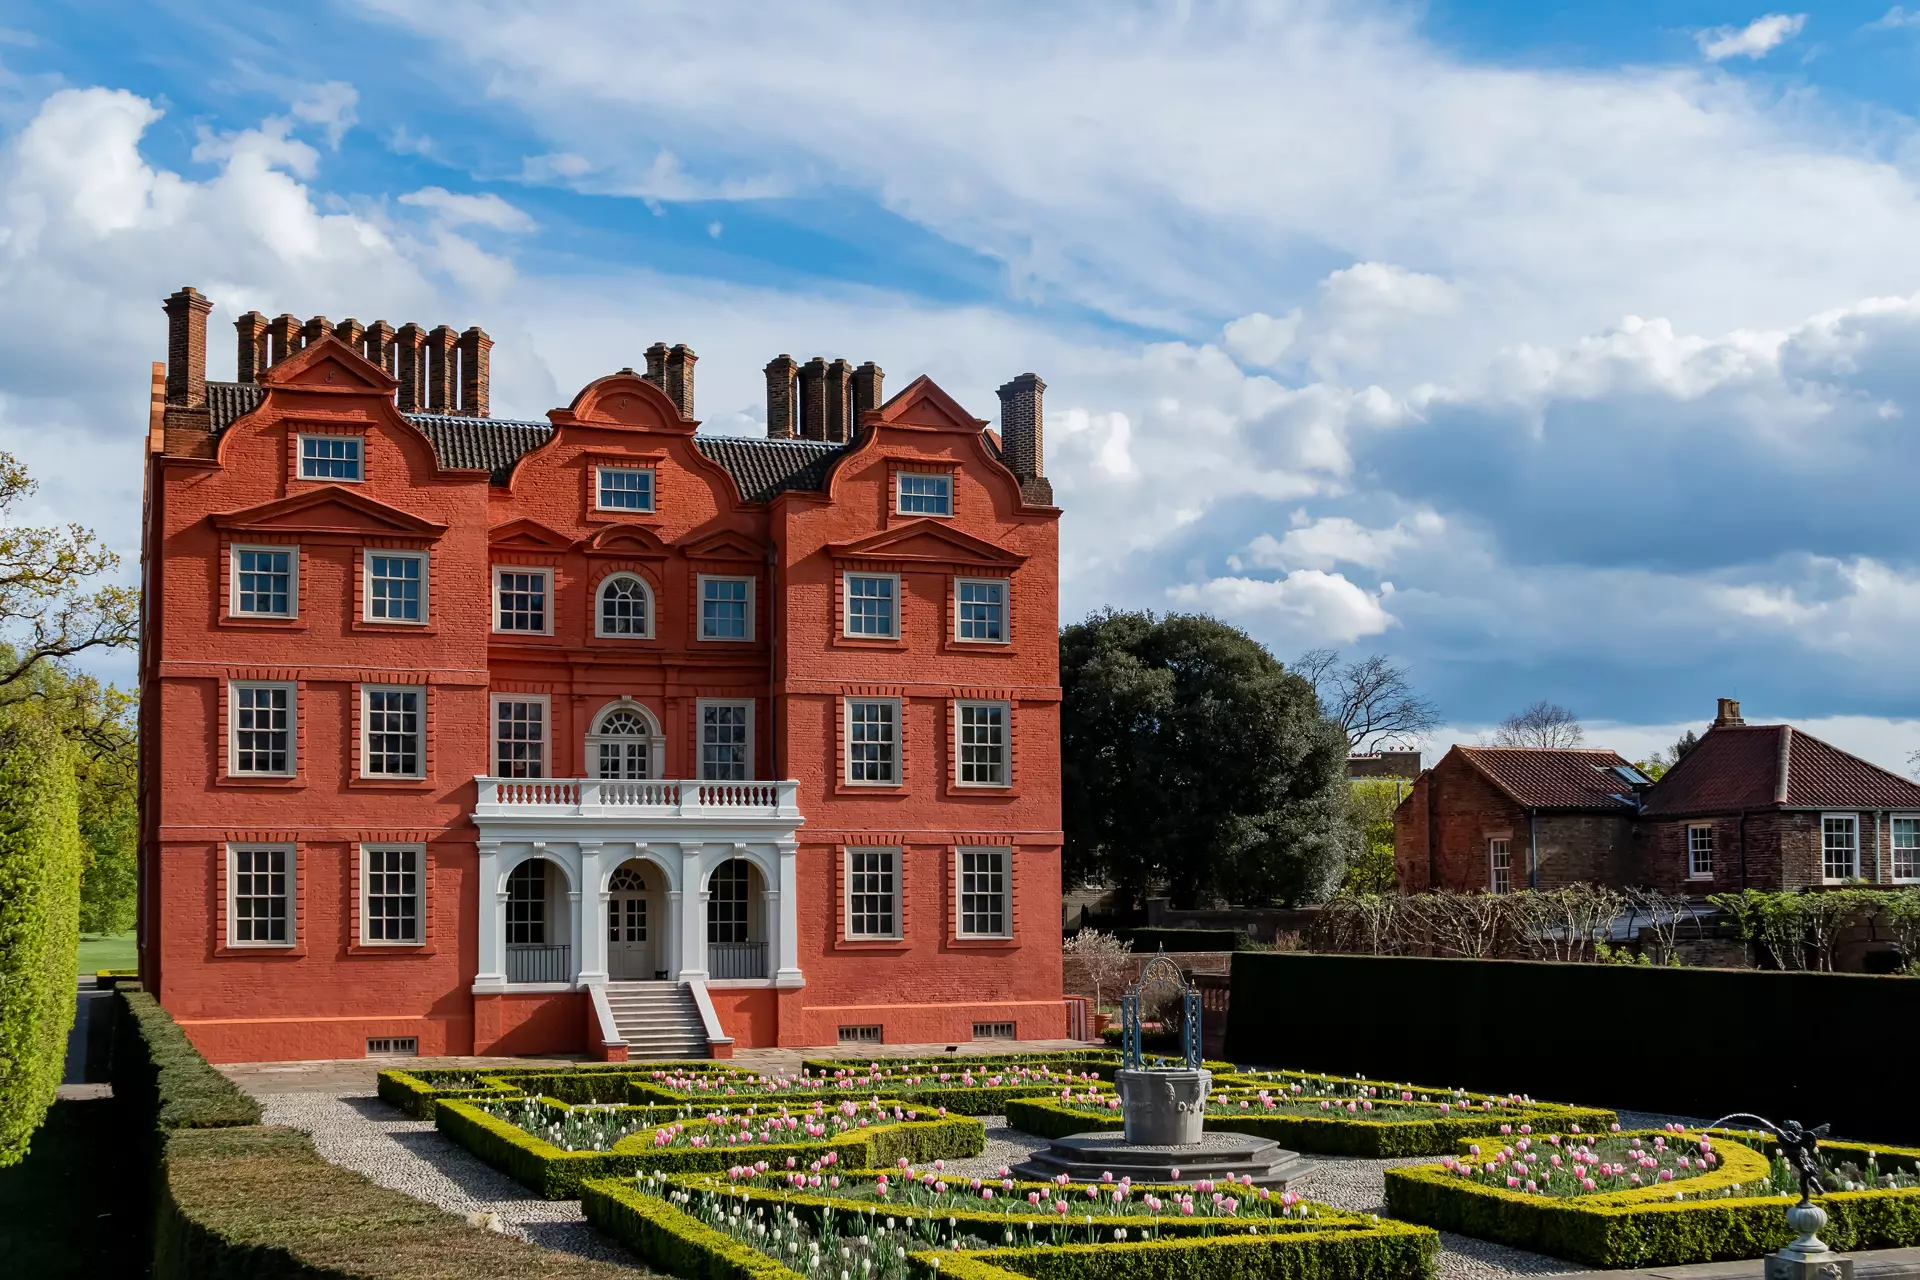 Surrey: Red brick home with maze in garden